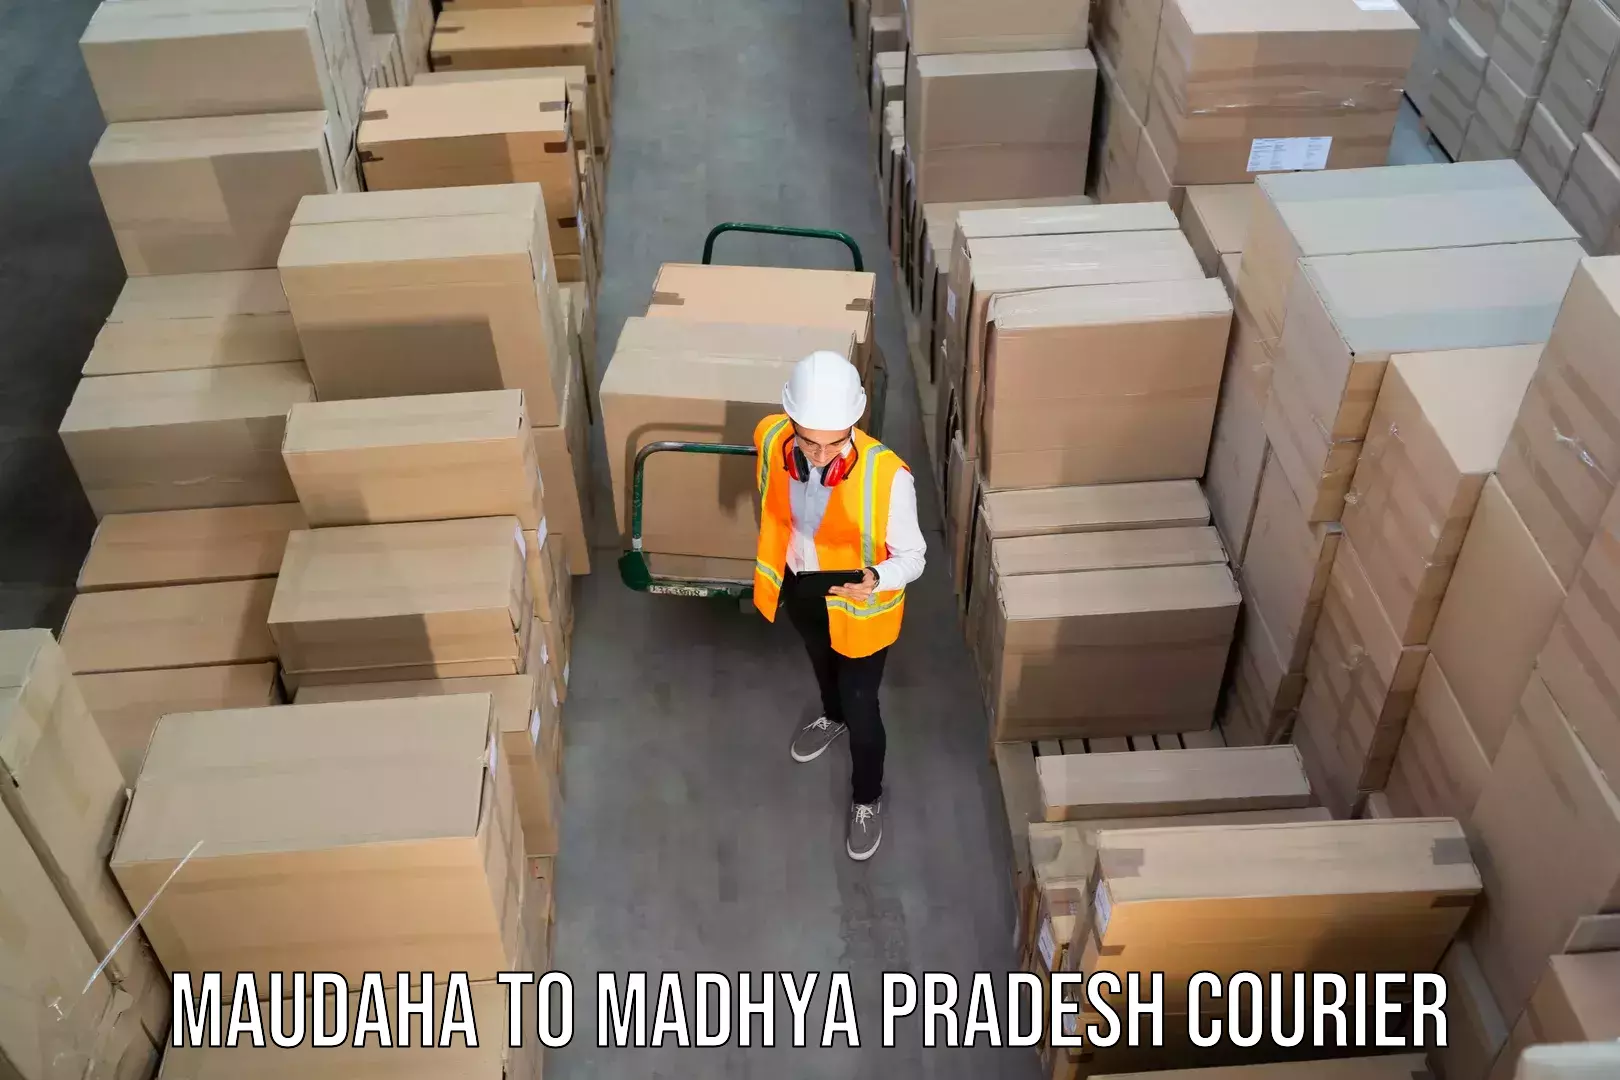 24/7 courier service Maudaha to Jhabua